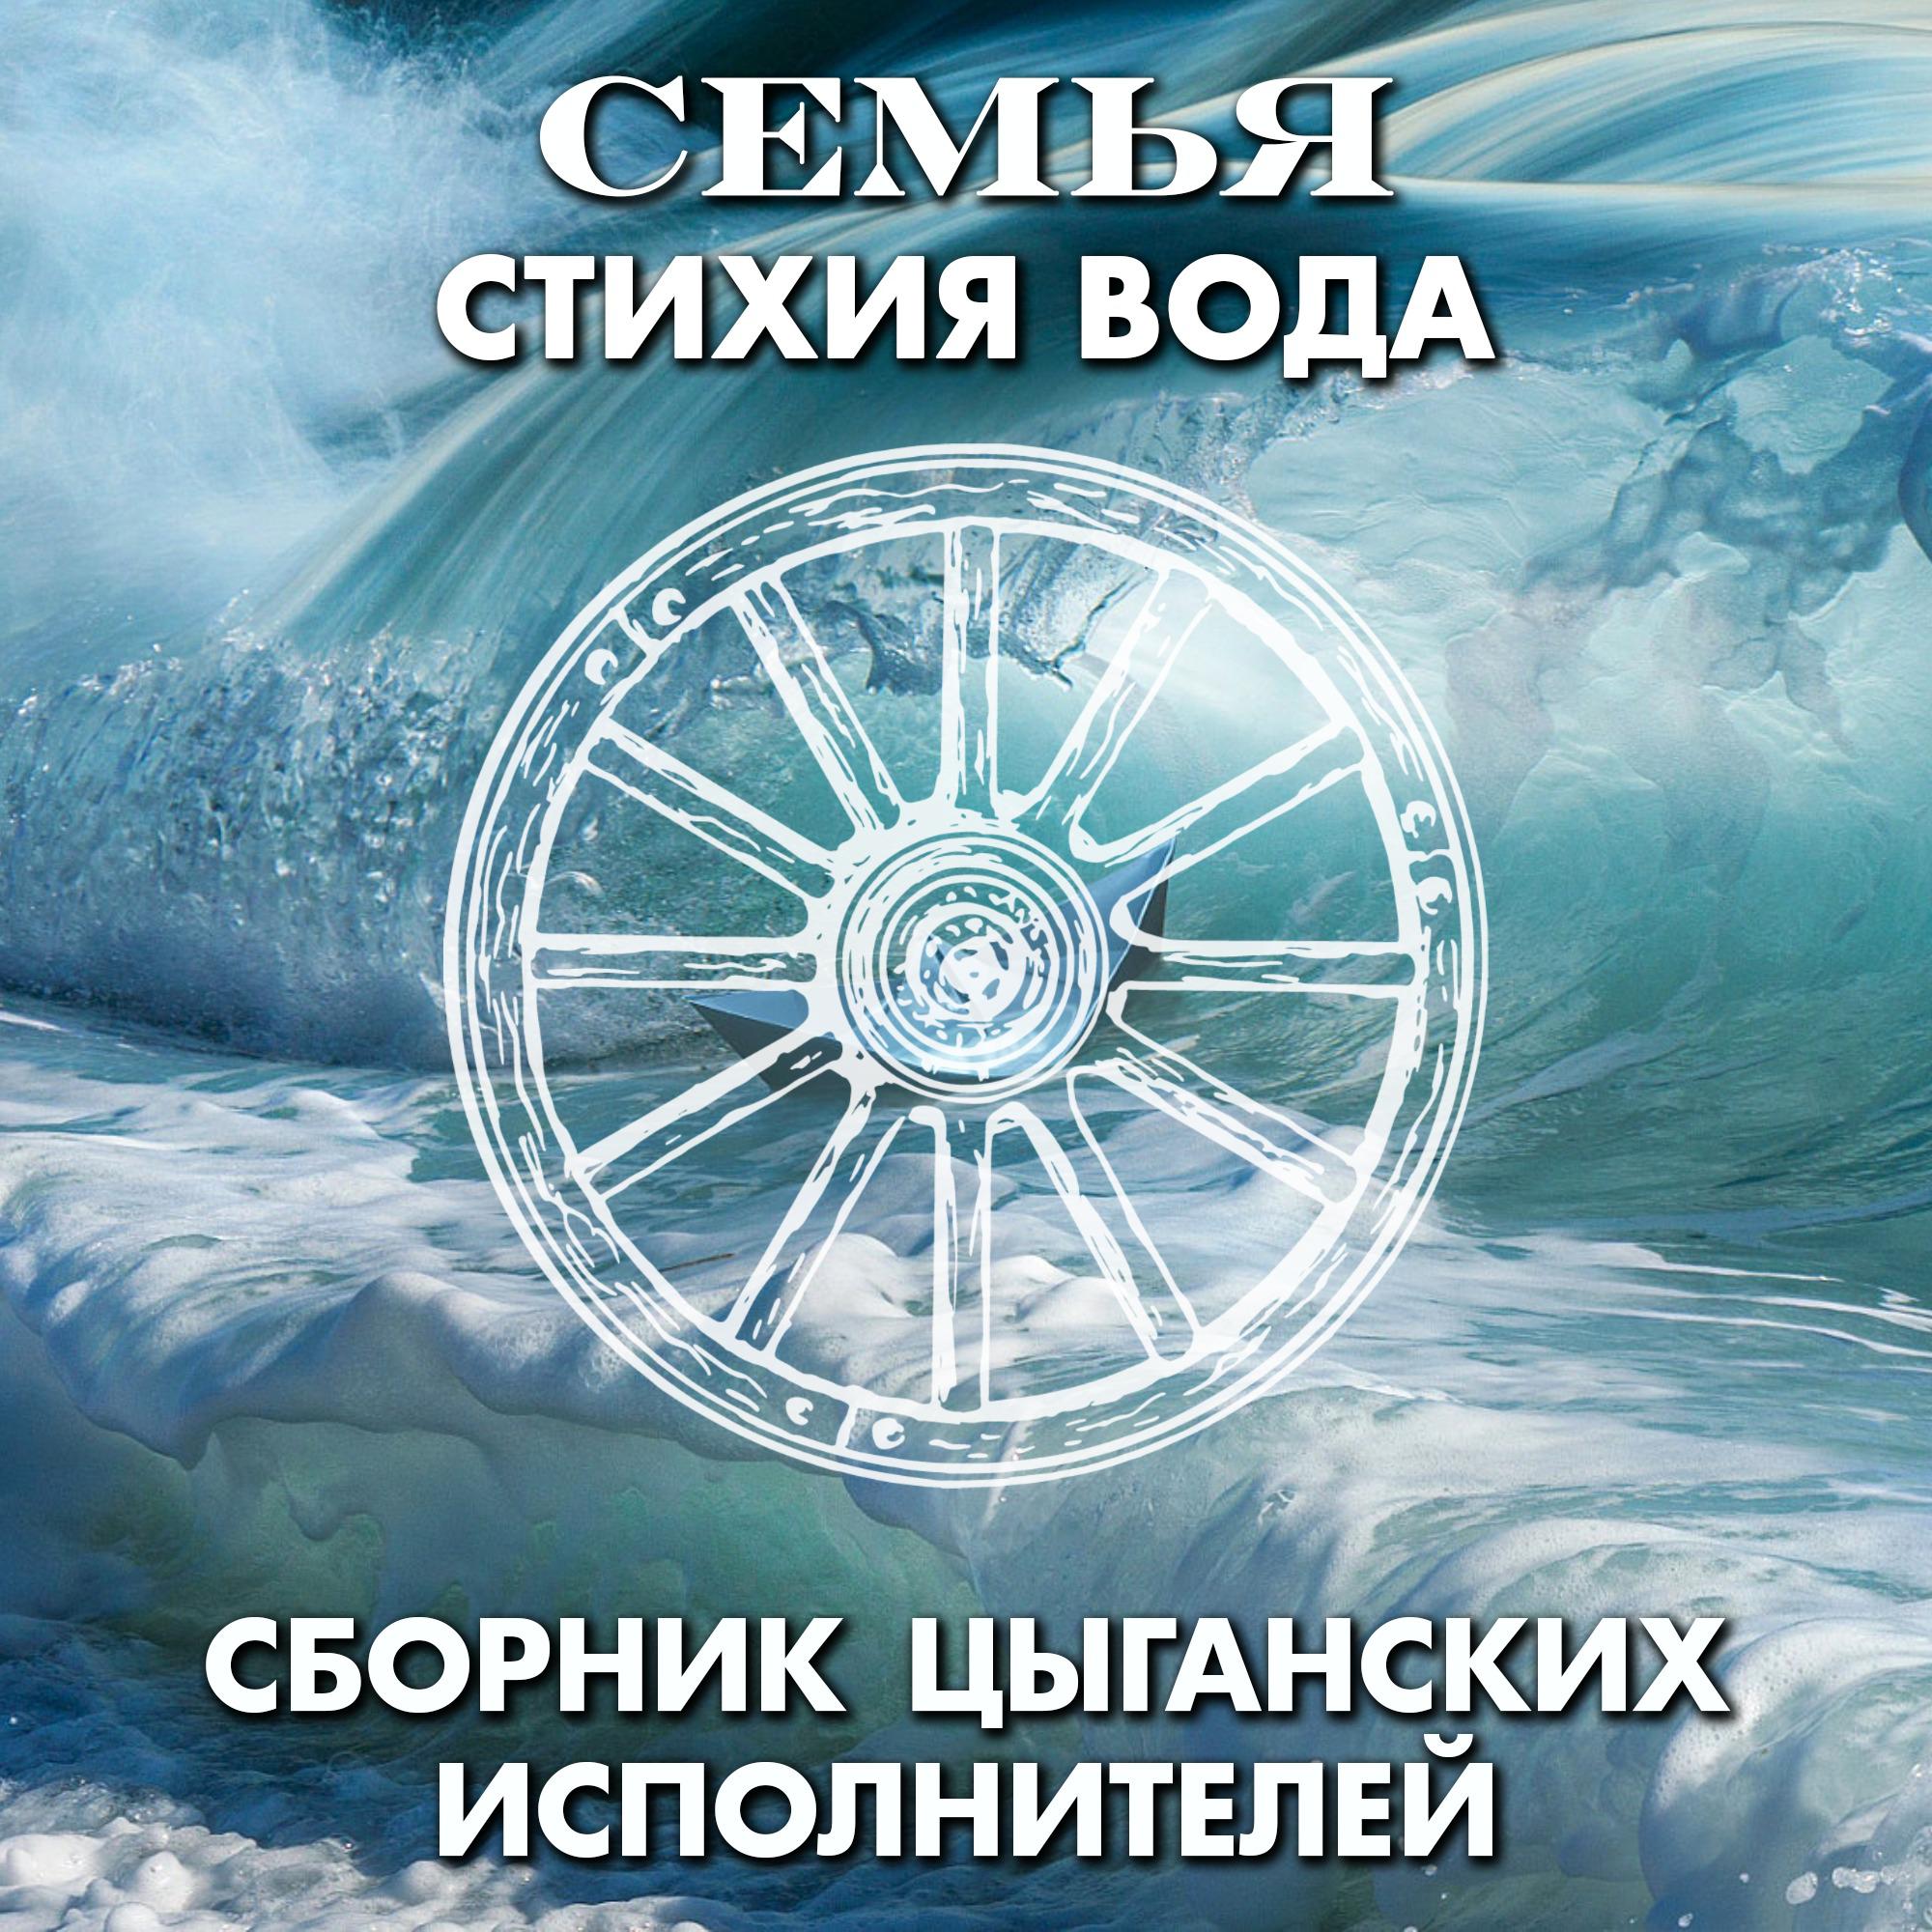 Постер альбома СЕМЬЯ - стихия Вода. Сборник цыганских исполнителей